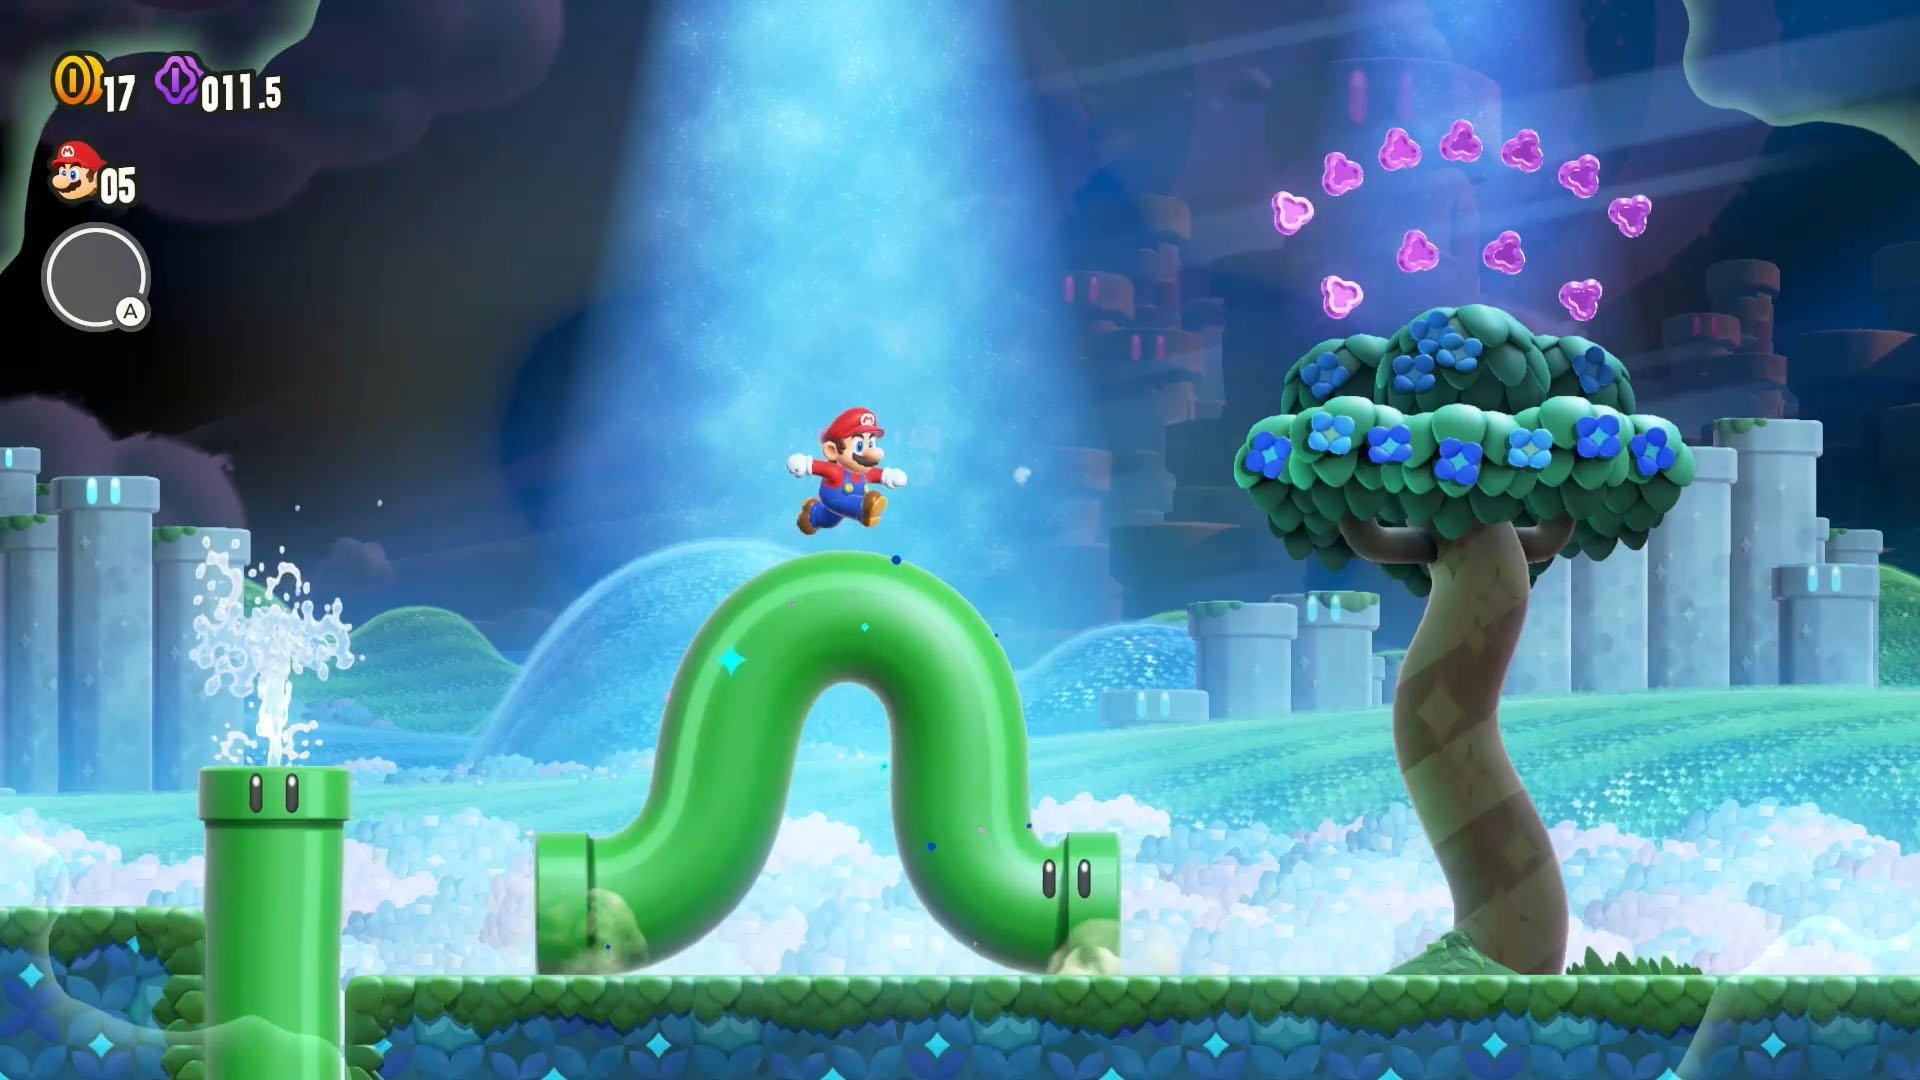 Super Mario Bros. Wonder em pré-venda: garanta a mídia física